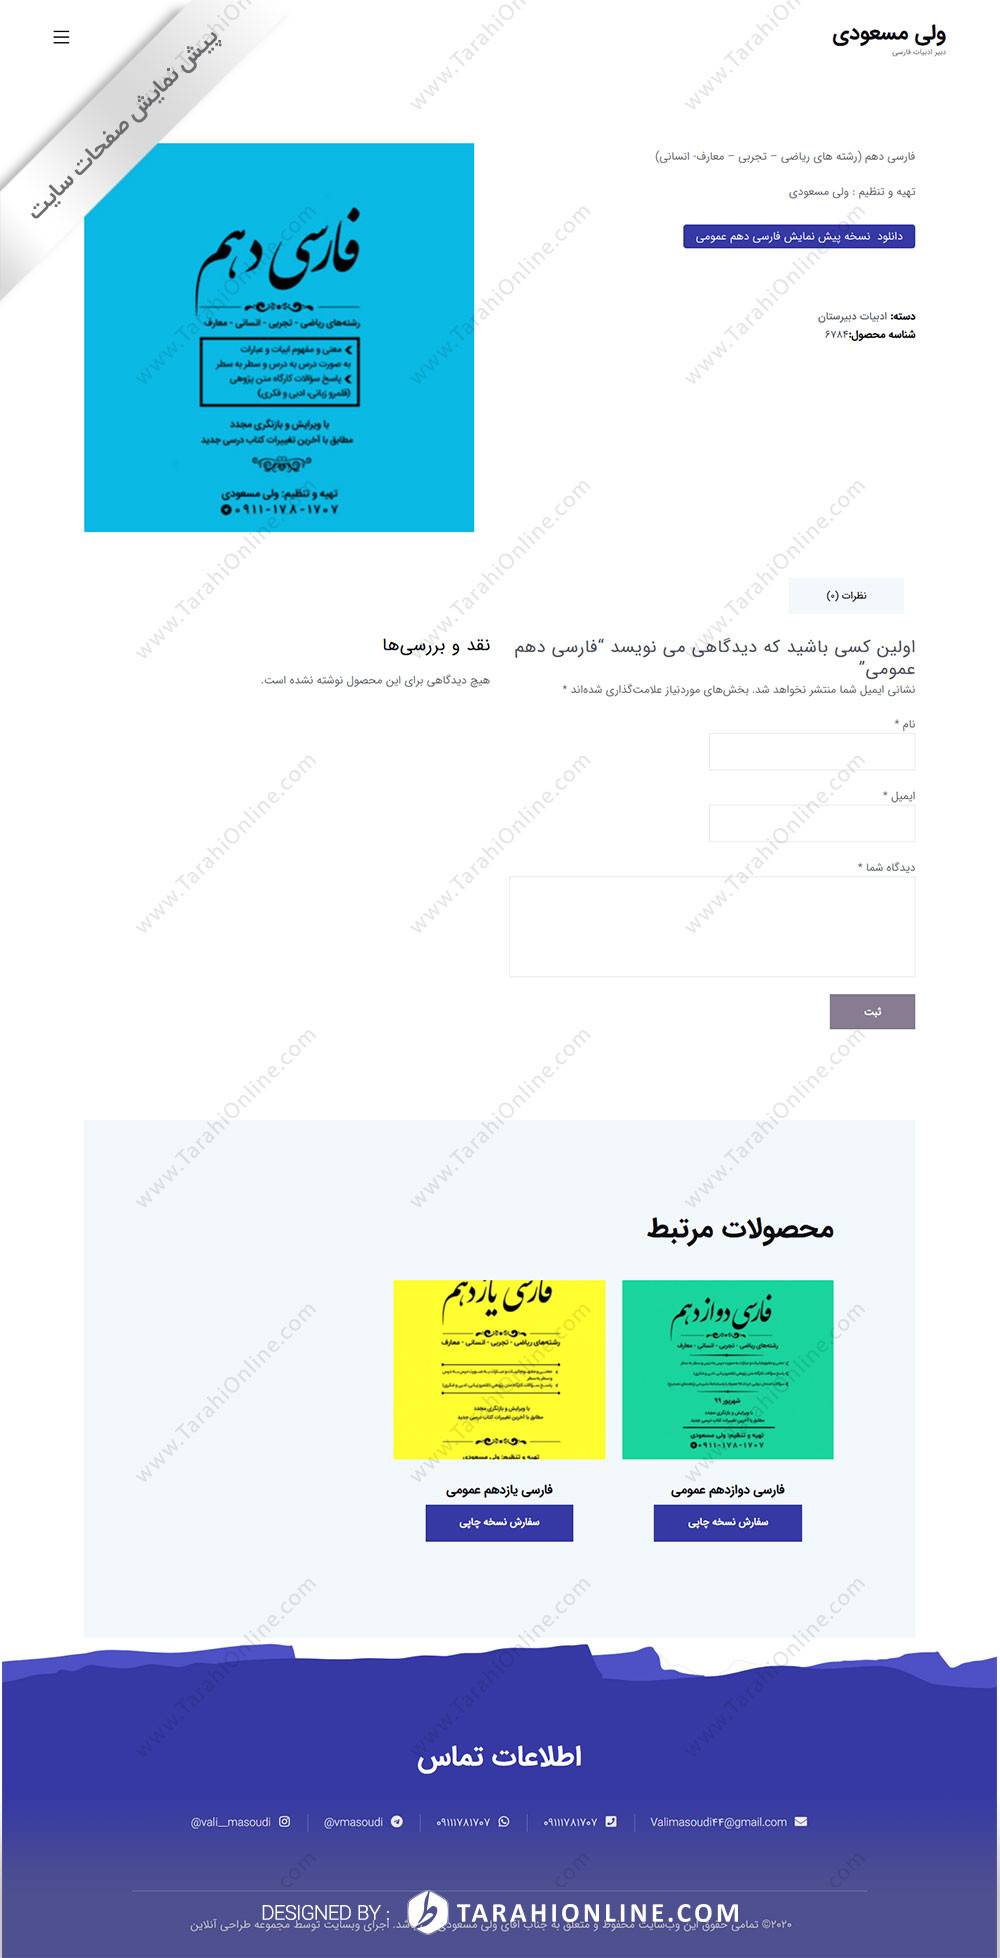 طراحی سایت شخصی ولی مسعودی